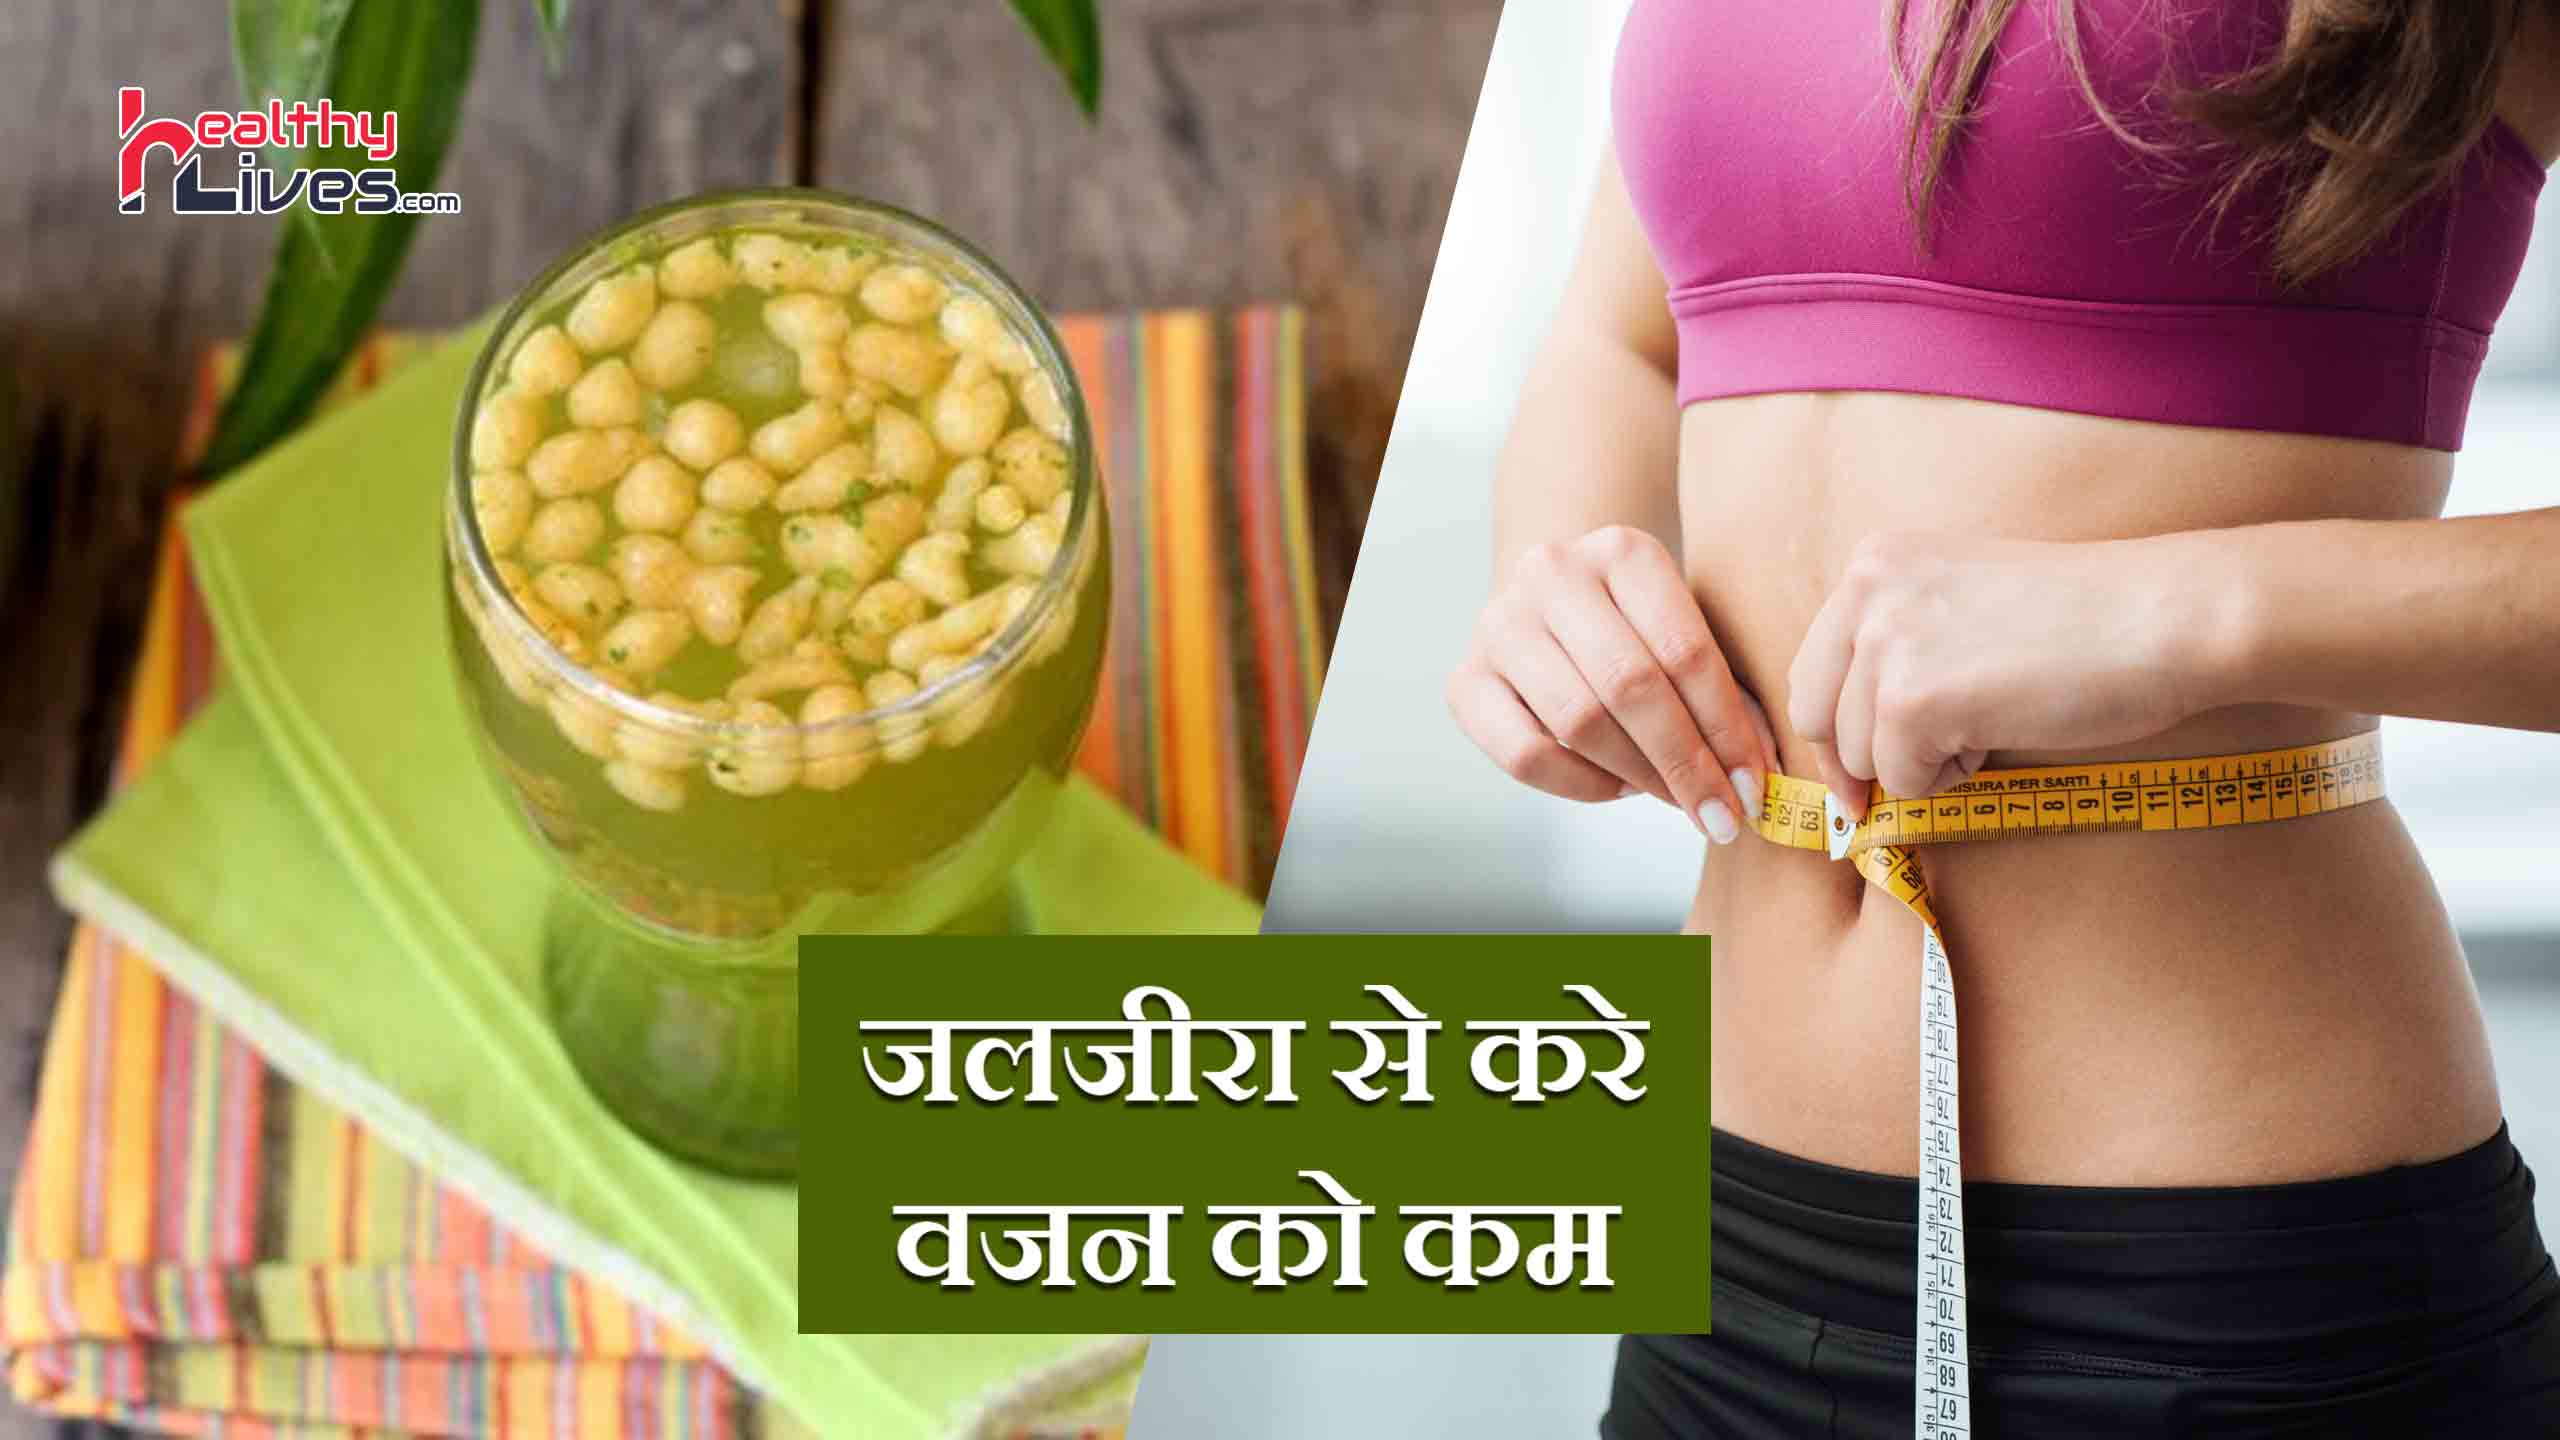 Jal Jeera for Weight Loss: स्वादिष्ट जल जीरा पिए और चुटकियों में वजन घटाएं